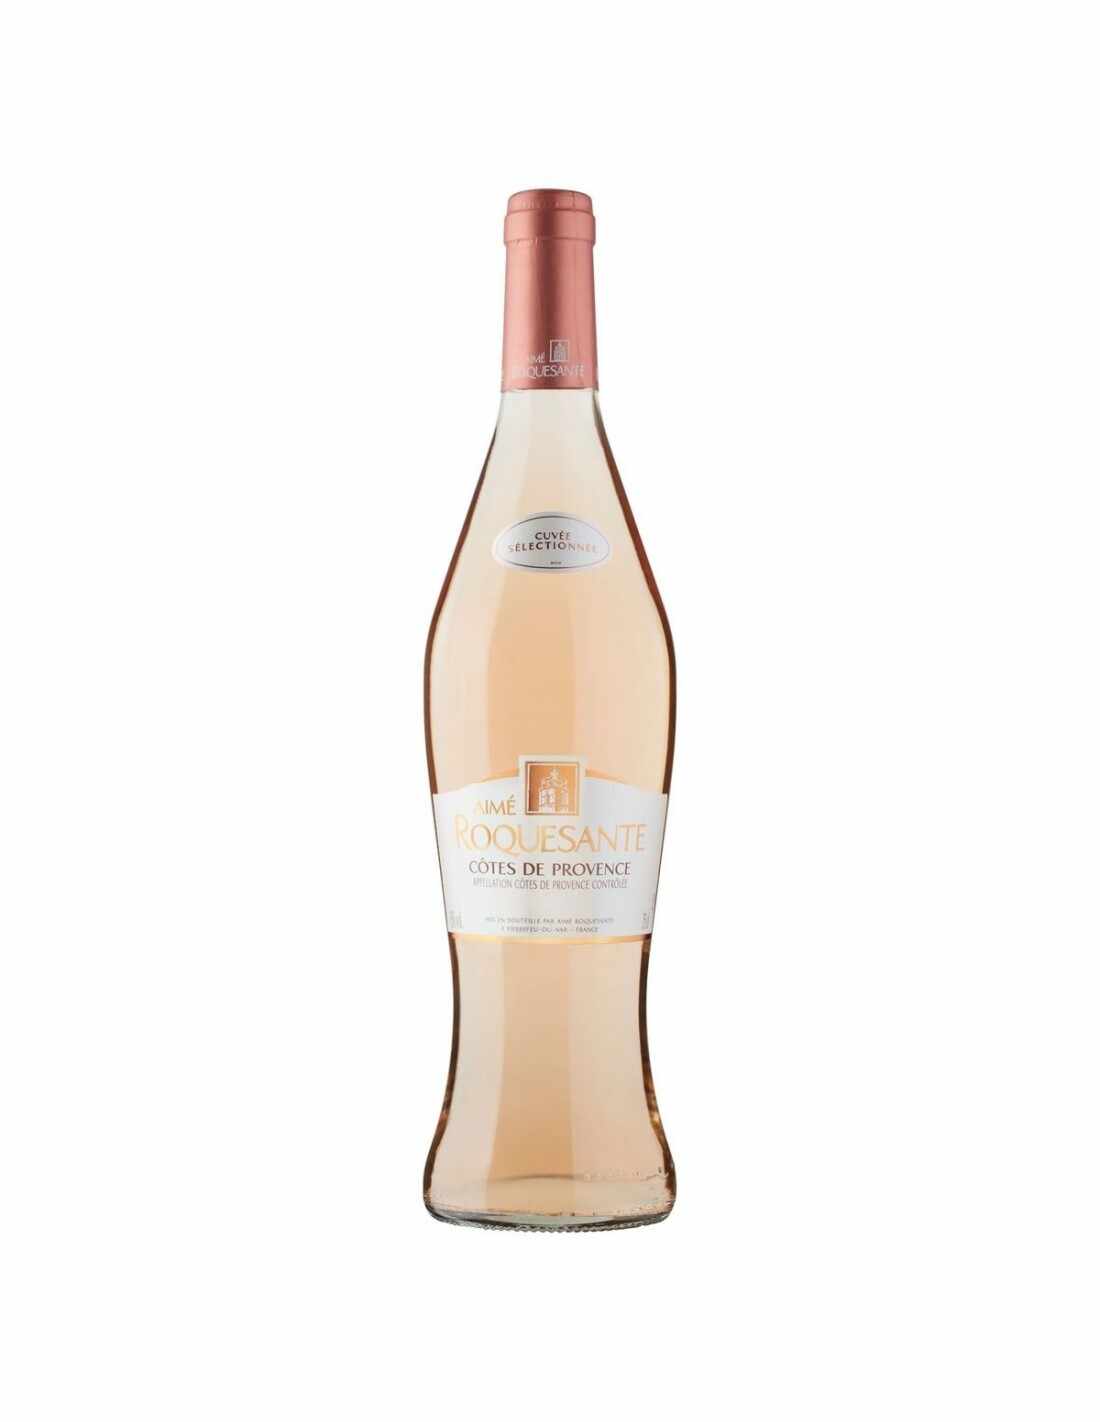 Vin roze, Cotes De Provence Aime Roquesante, 0.75L,12.5% alc., Franta